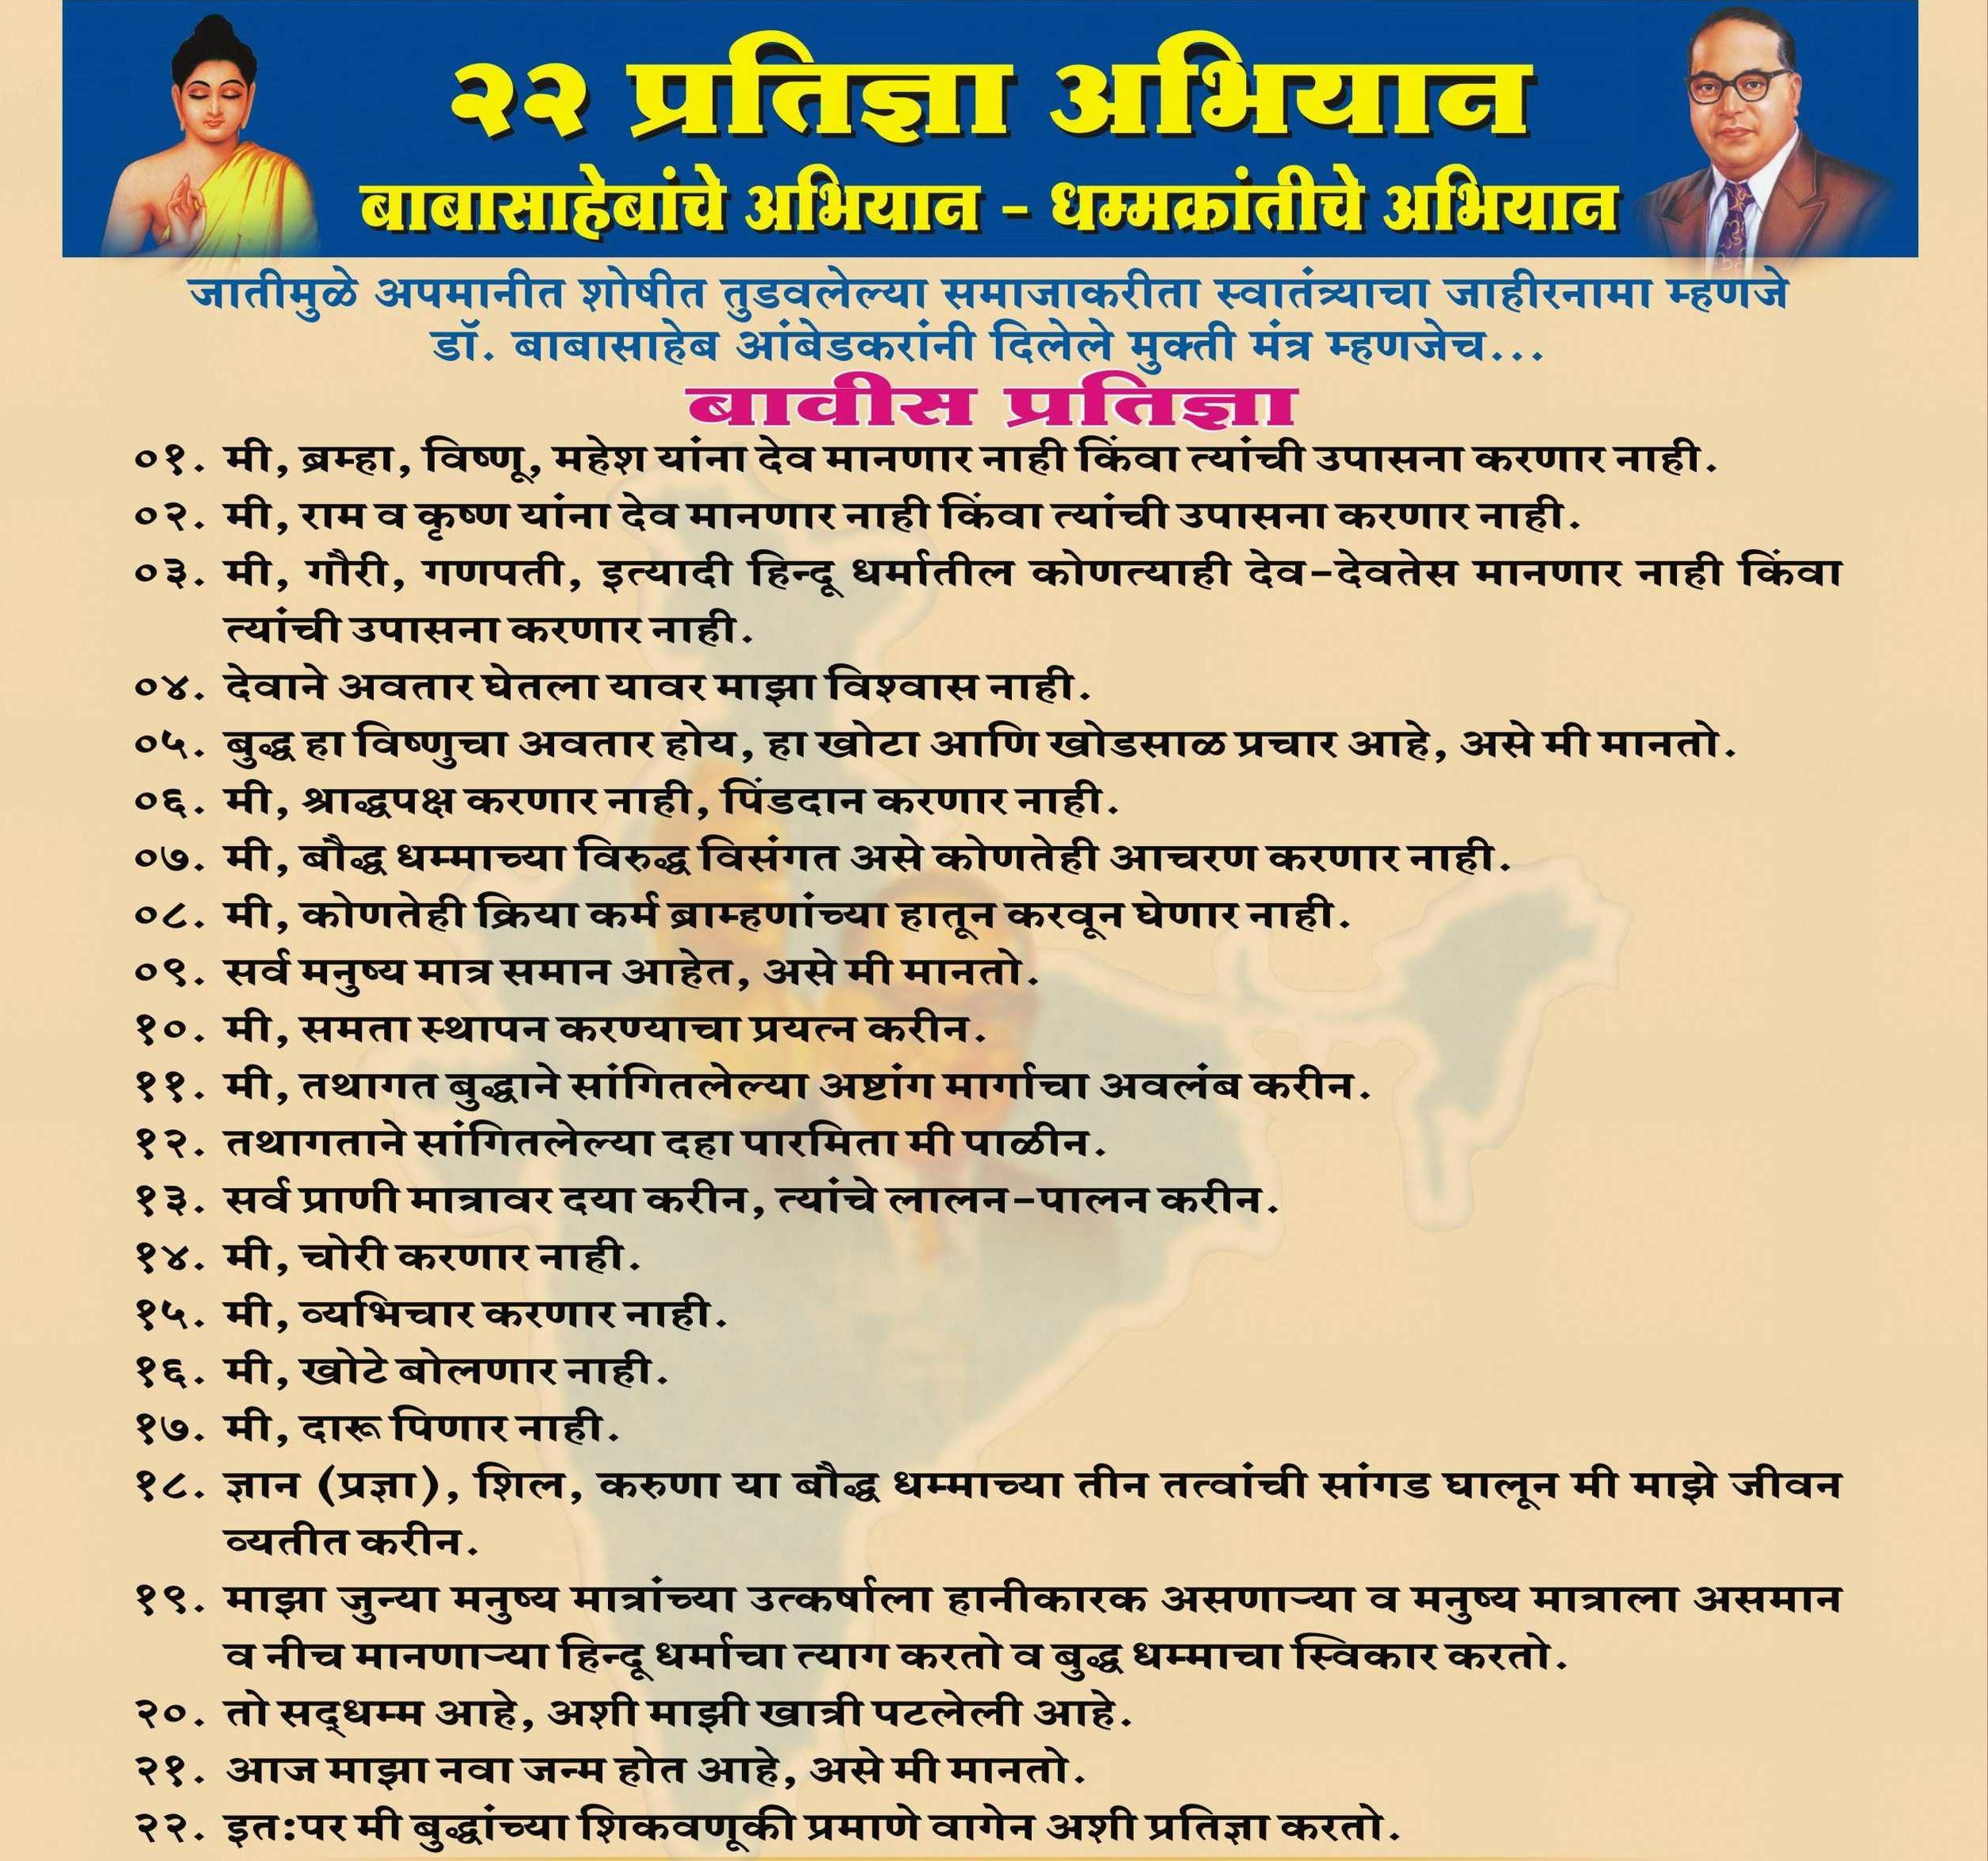 Dr babasaheb ambedkar biography in marathi pdf